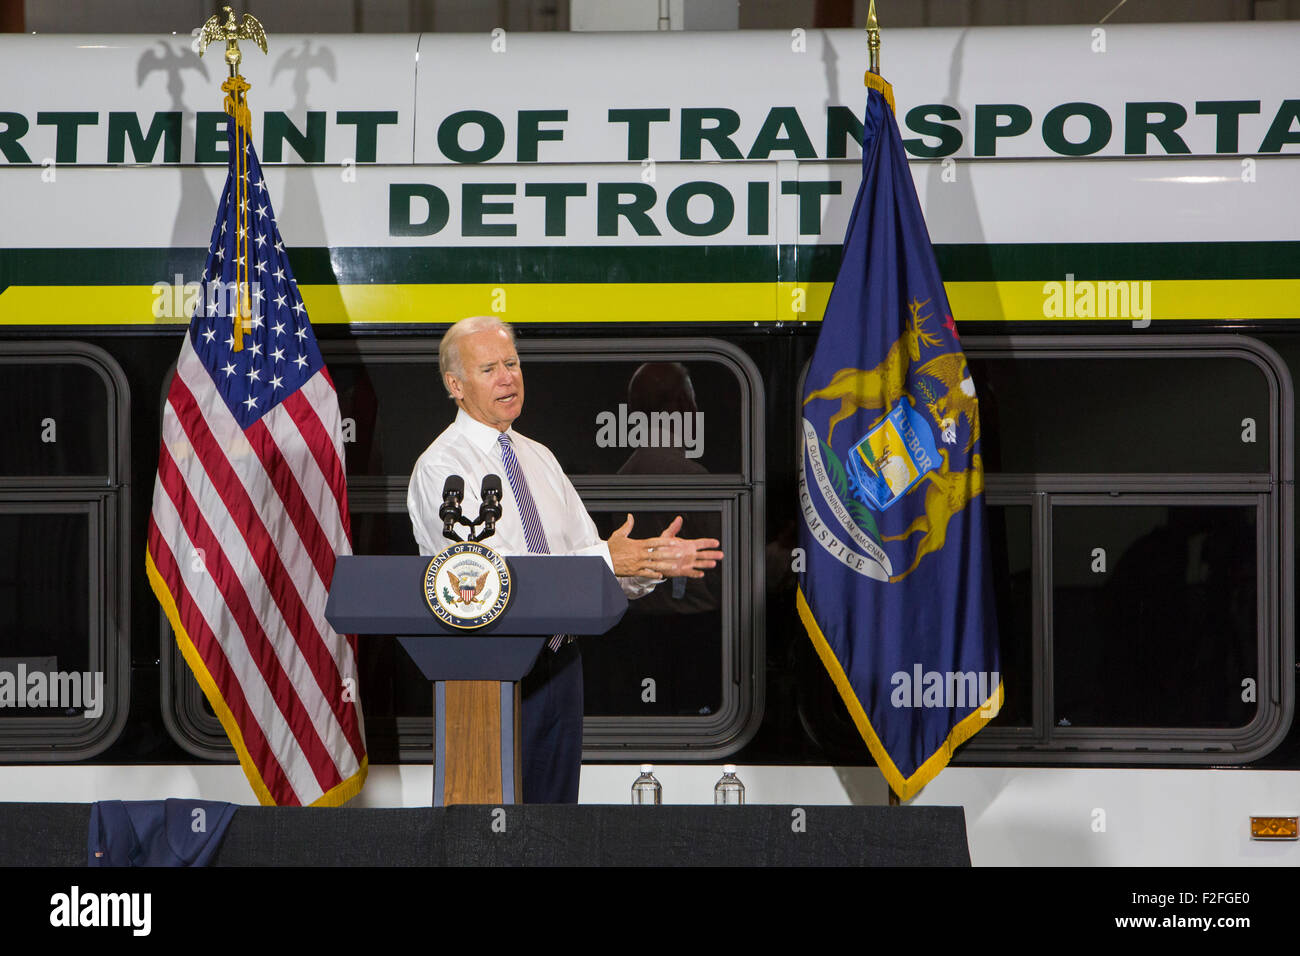 Detroit, Michigan, USA. 17 septembre 2015. Le vice-président Joe Biden parle de l'amélioration du système de transport en commun à Detroit. Biden a aidé à obtenir Detroit 80 nouveaux autobus, financé par le gouvernement fédéral. Crédit : Jim West/Alamy Live News Banque D'Images